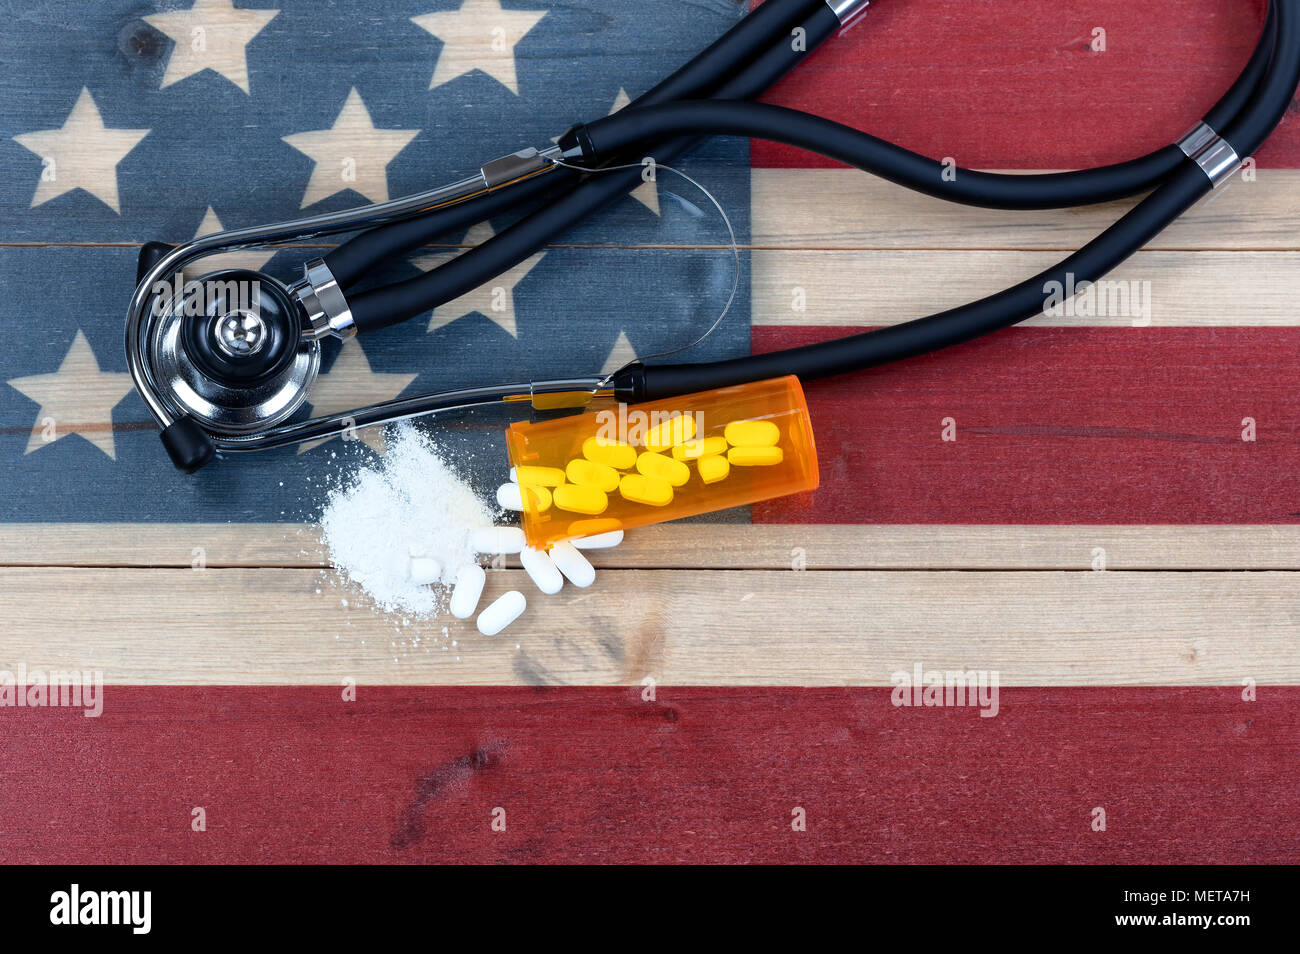 Vista aerea della prescrizione per generic oppioide con schiacciati o tutto il killer del dolore compresse. Rustico bandiera degli Stati Uniti e stetoscopio medico in background per Foto Stock